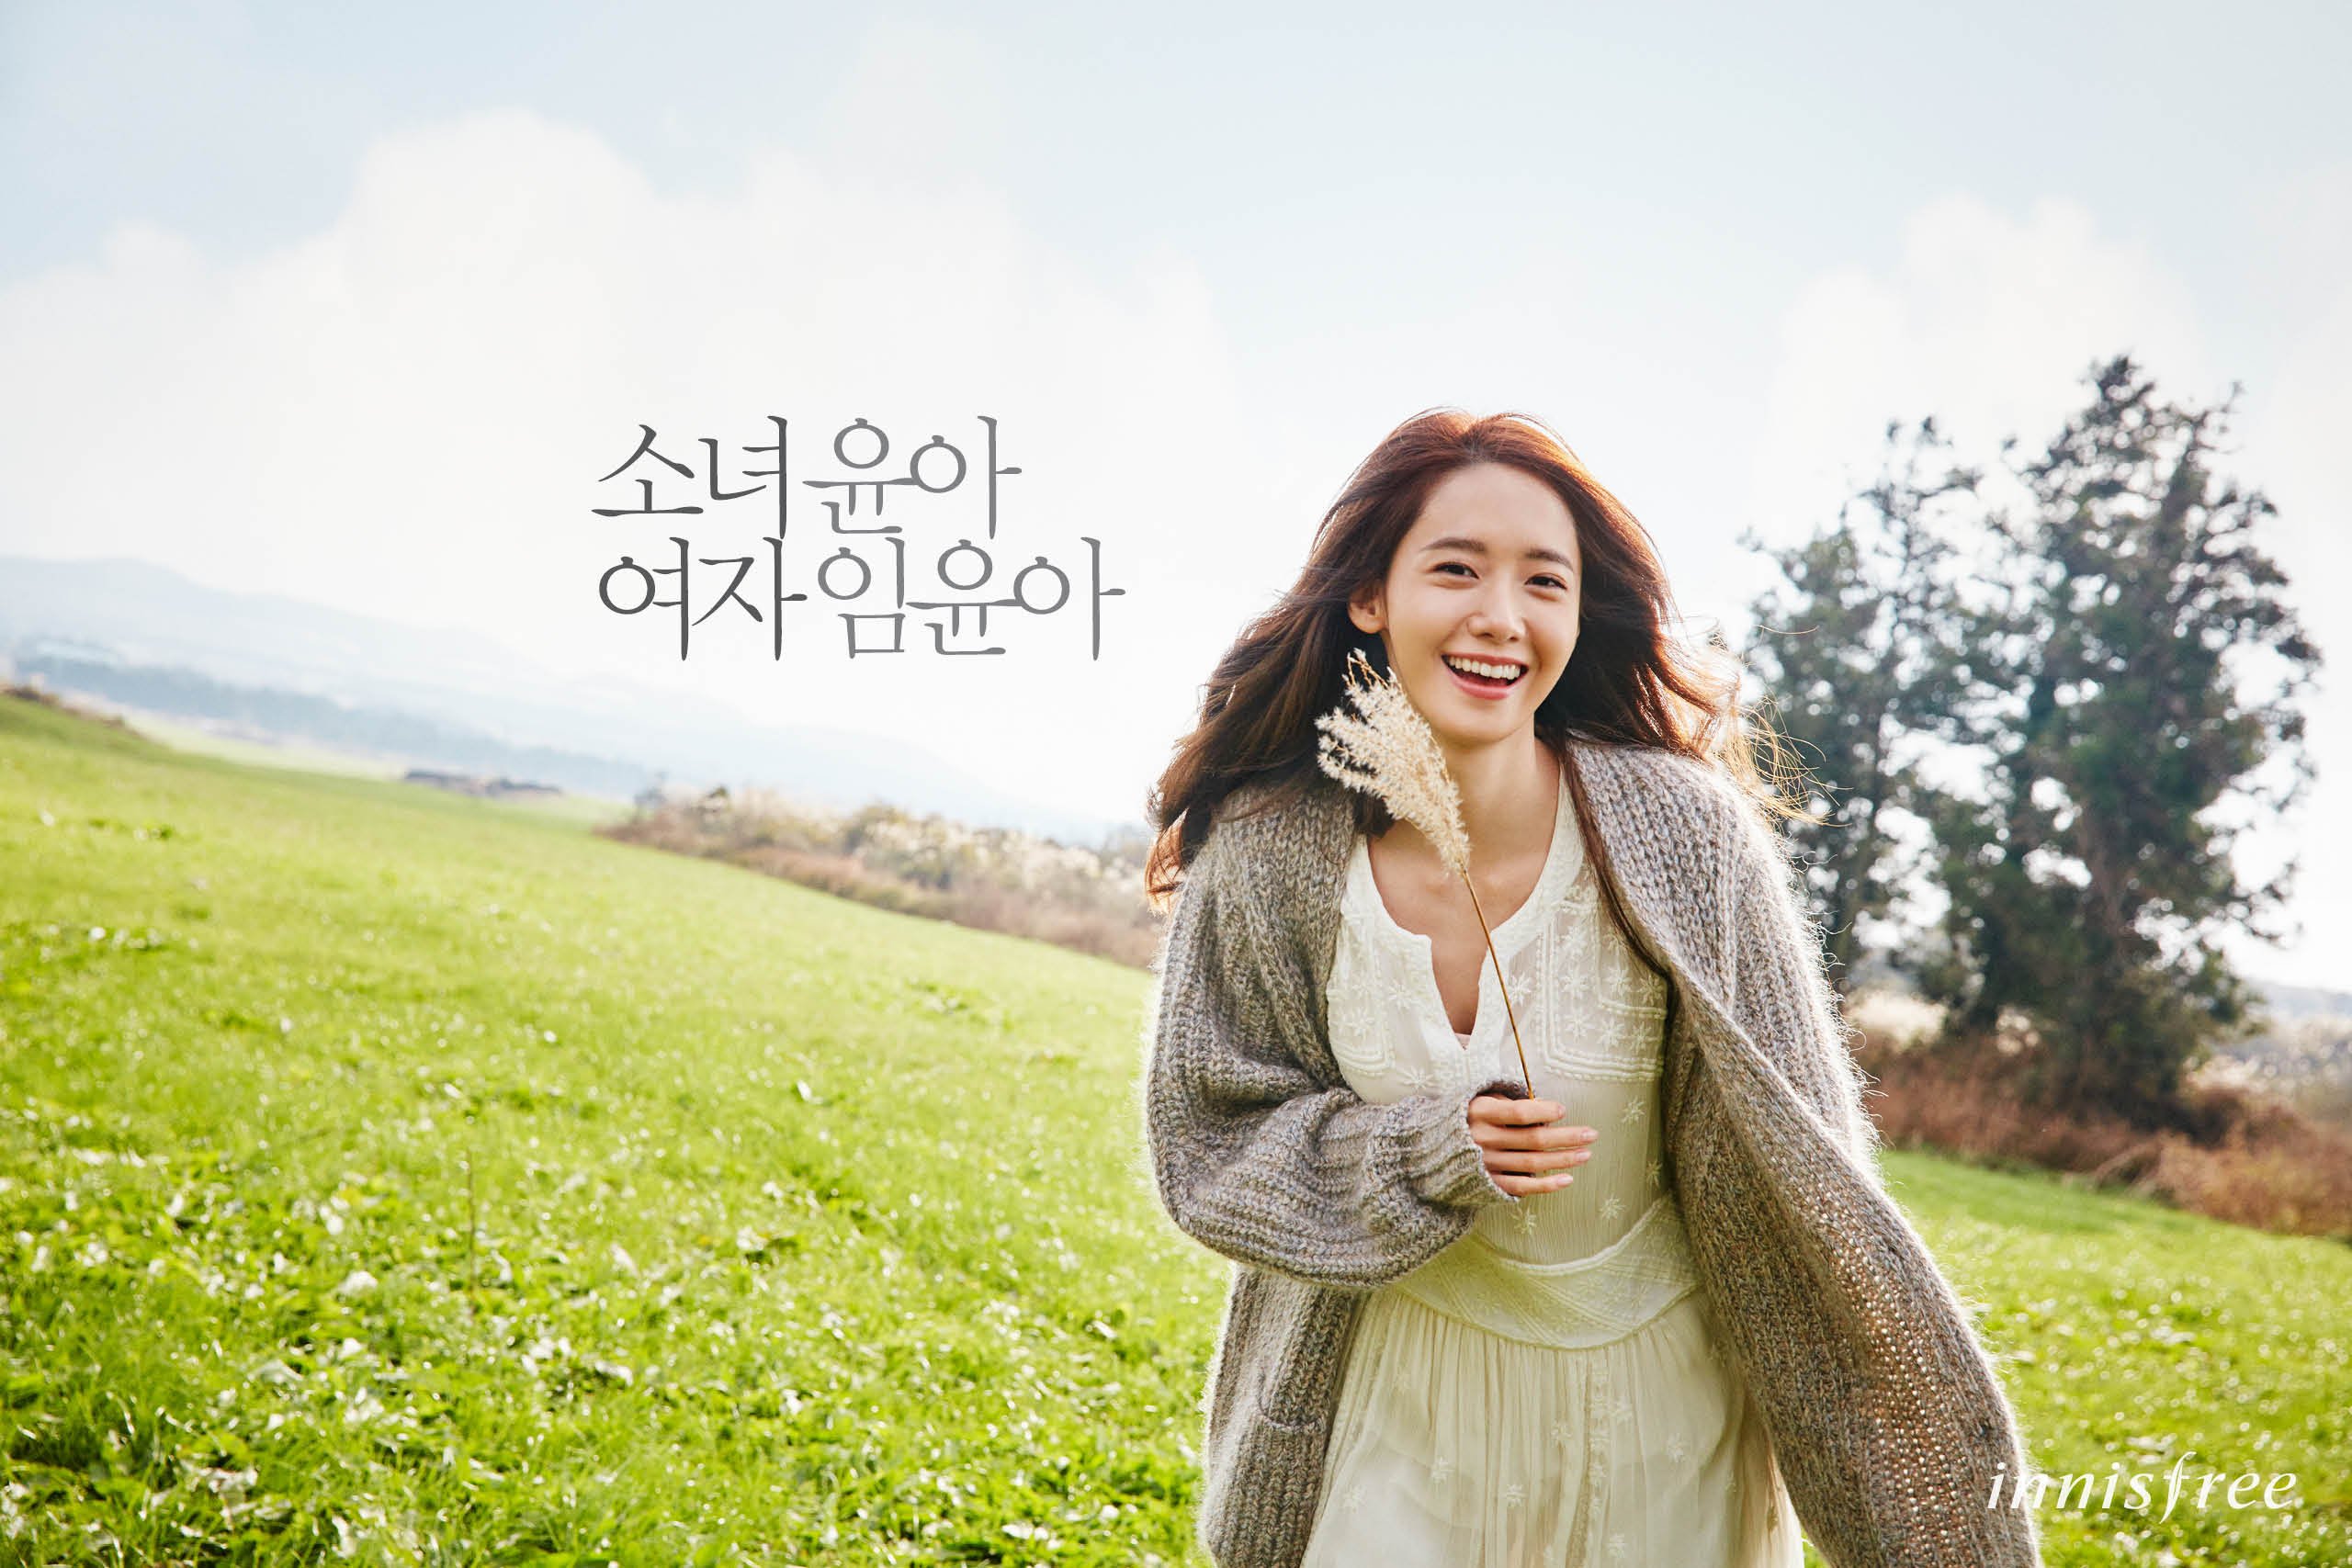 [OTHER][21-07-2012]Hình ảnh mới nhất từ thương hiệu "Innisfree" của YoonA - Page 14 OY01GdXGii-3000x3000